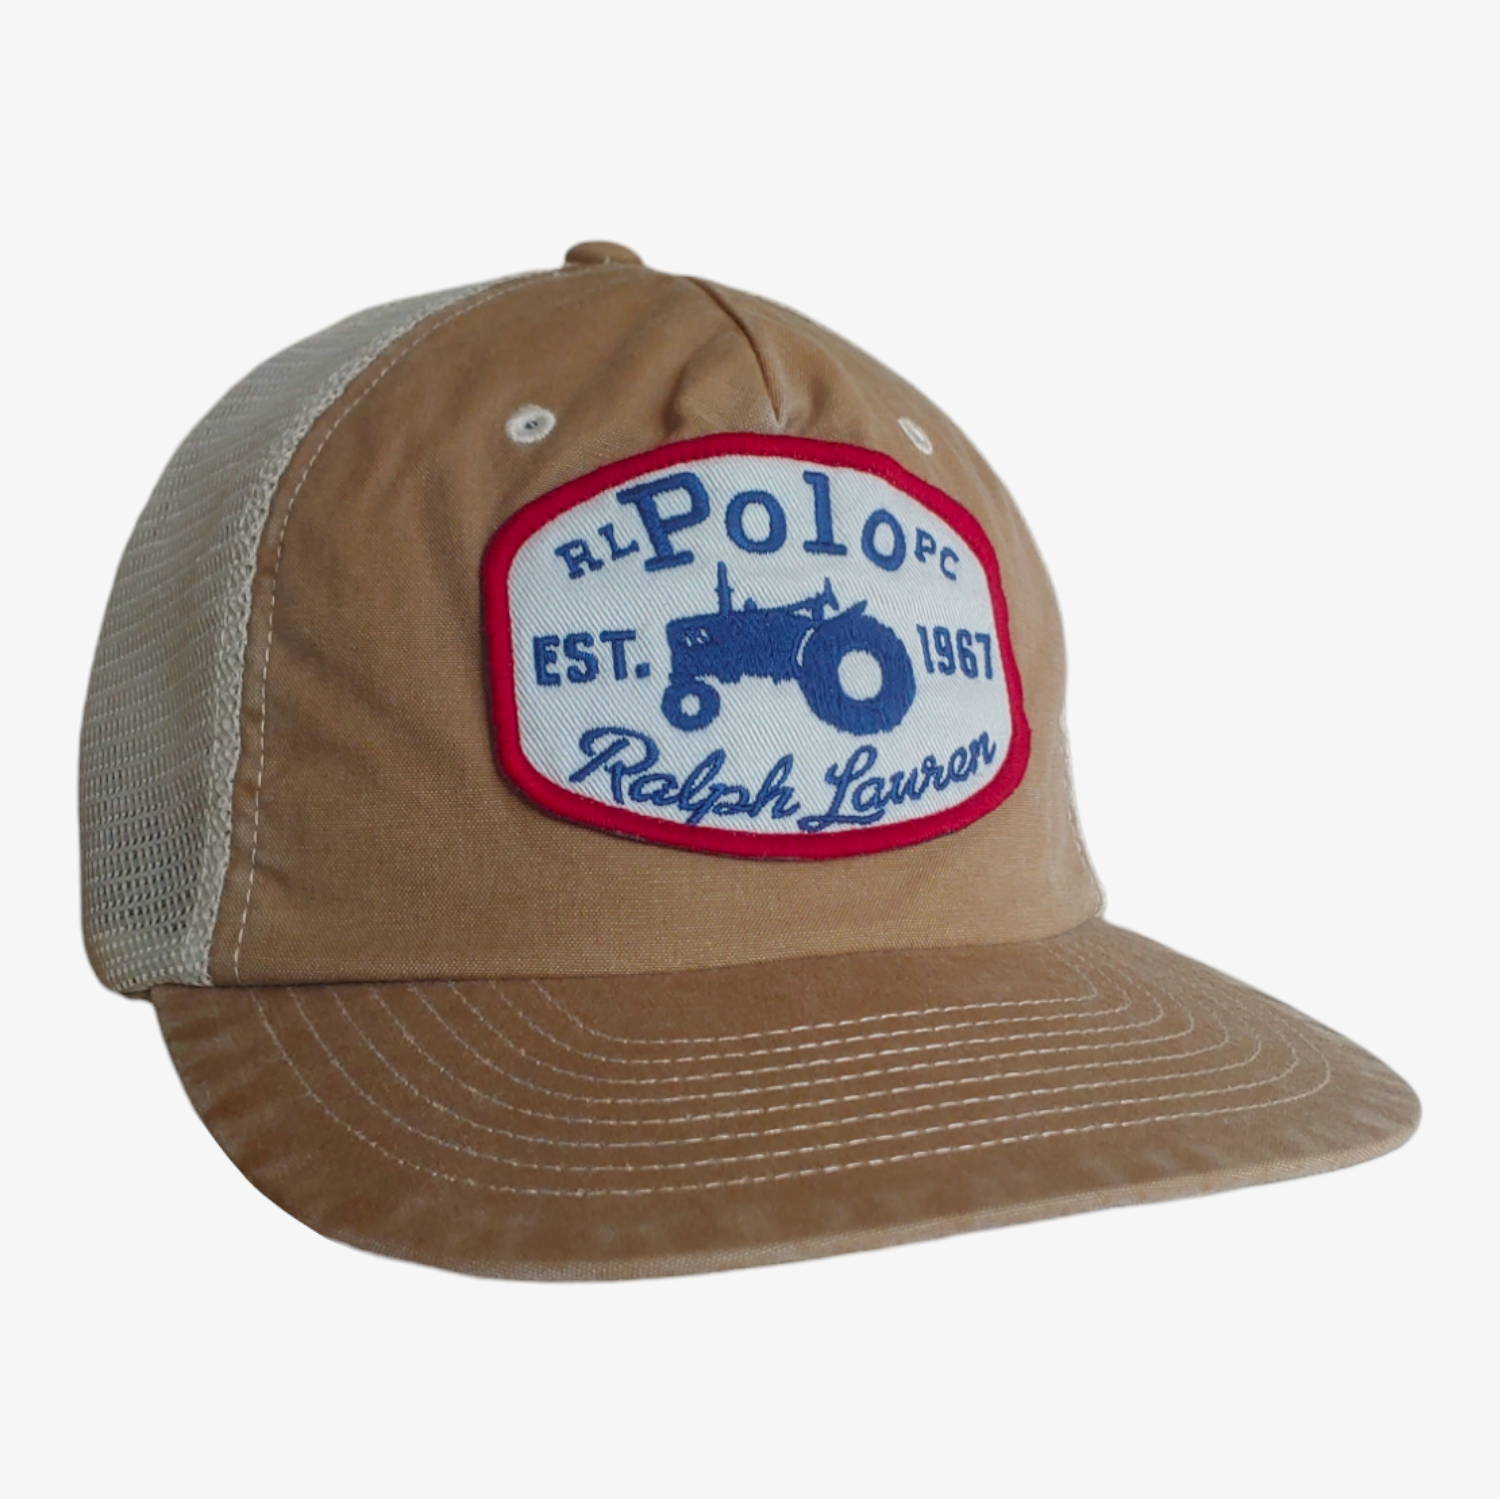 Polo Ralph Lauren Trucker Cap Brand New With Tags - Casspios Dream